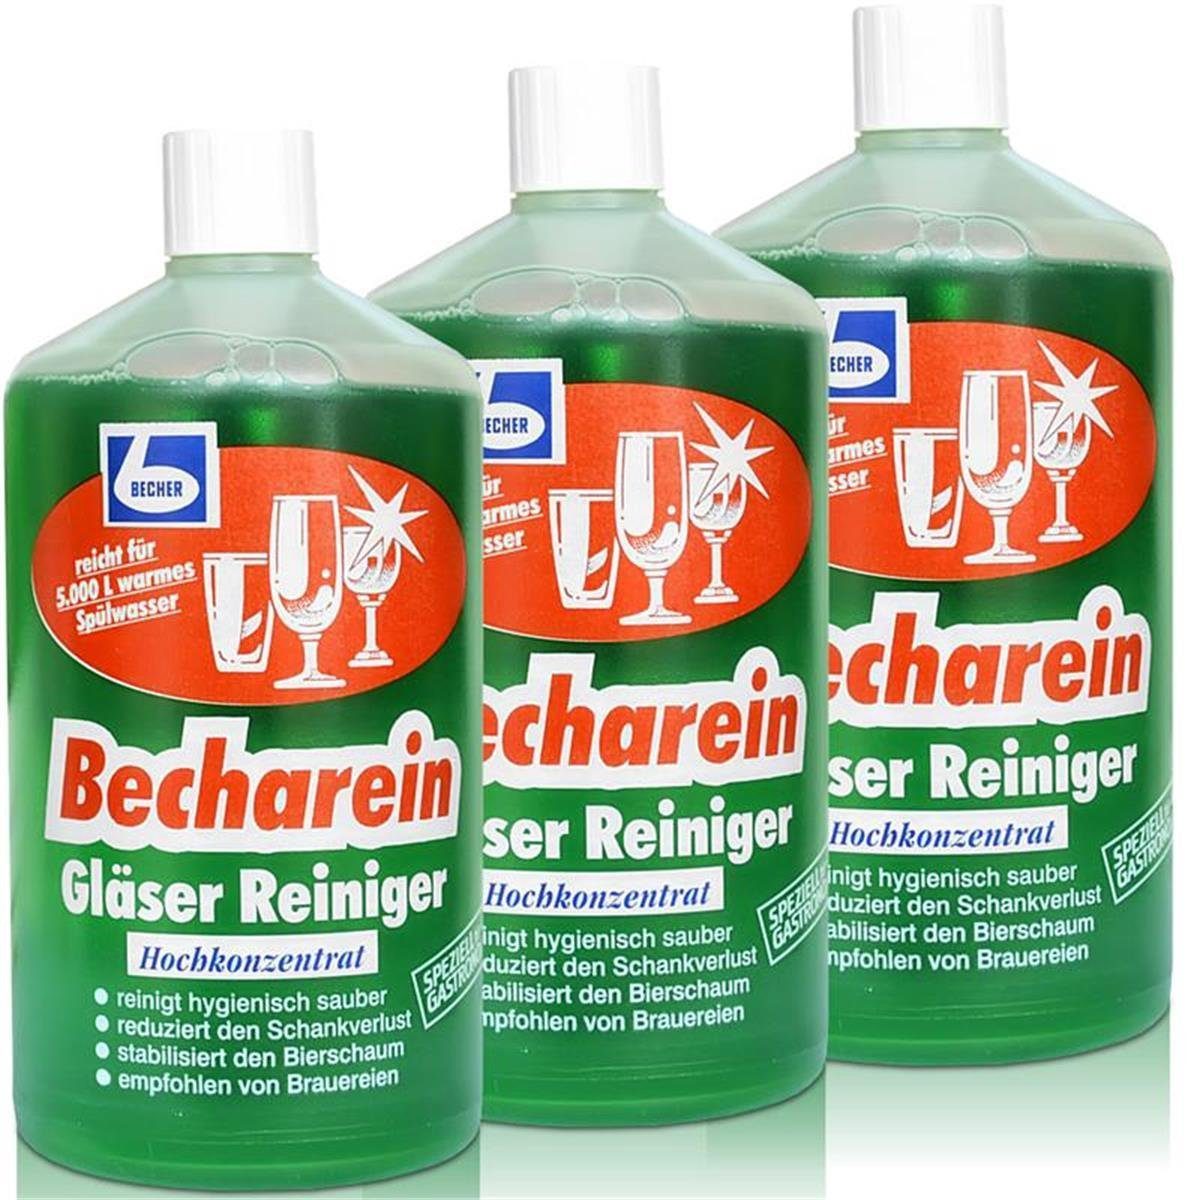 Dr. Becher 3x Dr. Becher Becharein Gläser Reiniger Hochkonzentrat / 1 Liter Glasreiniger